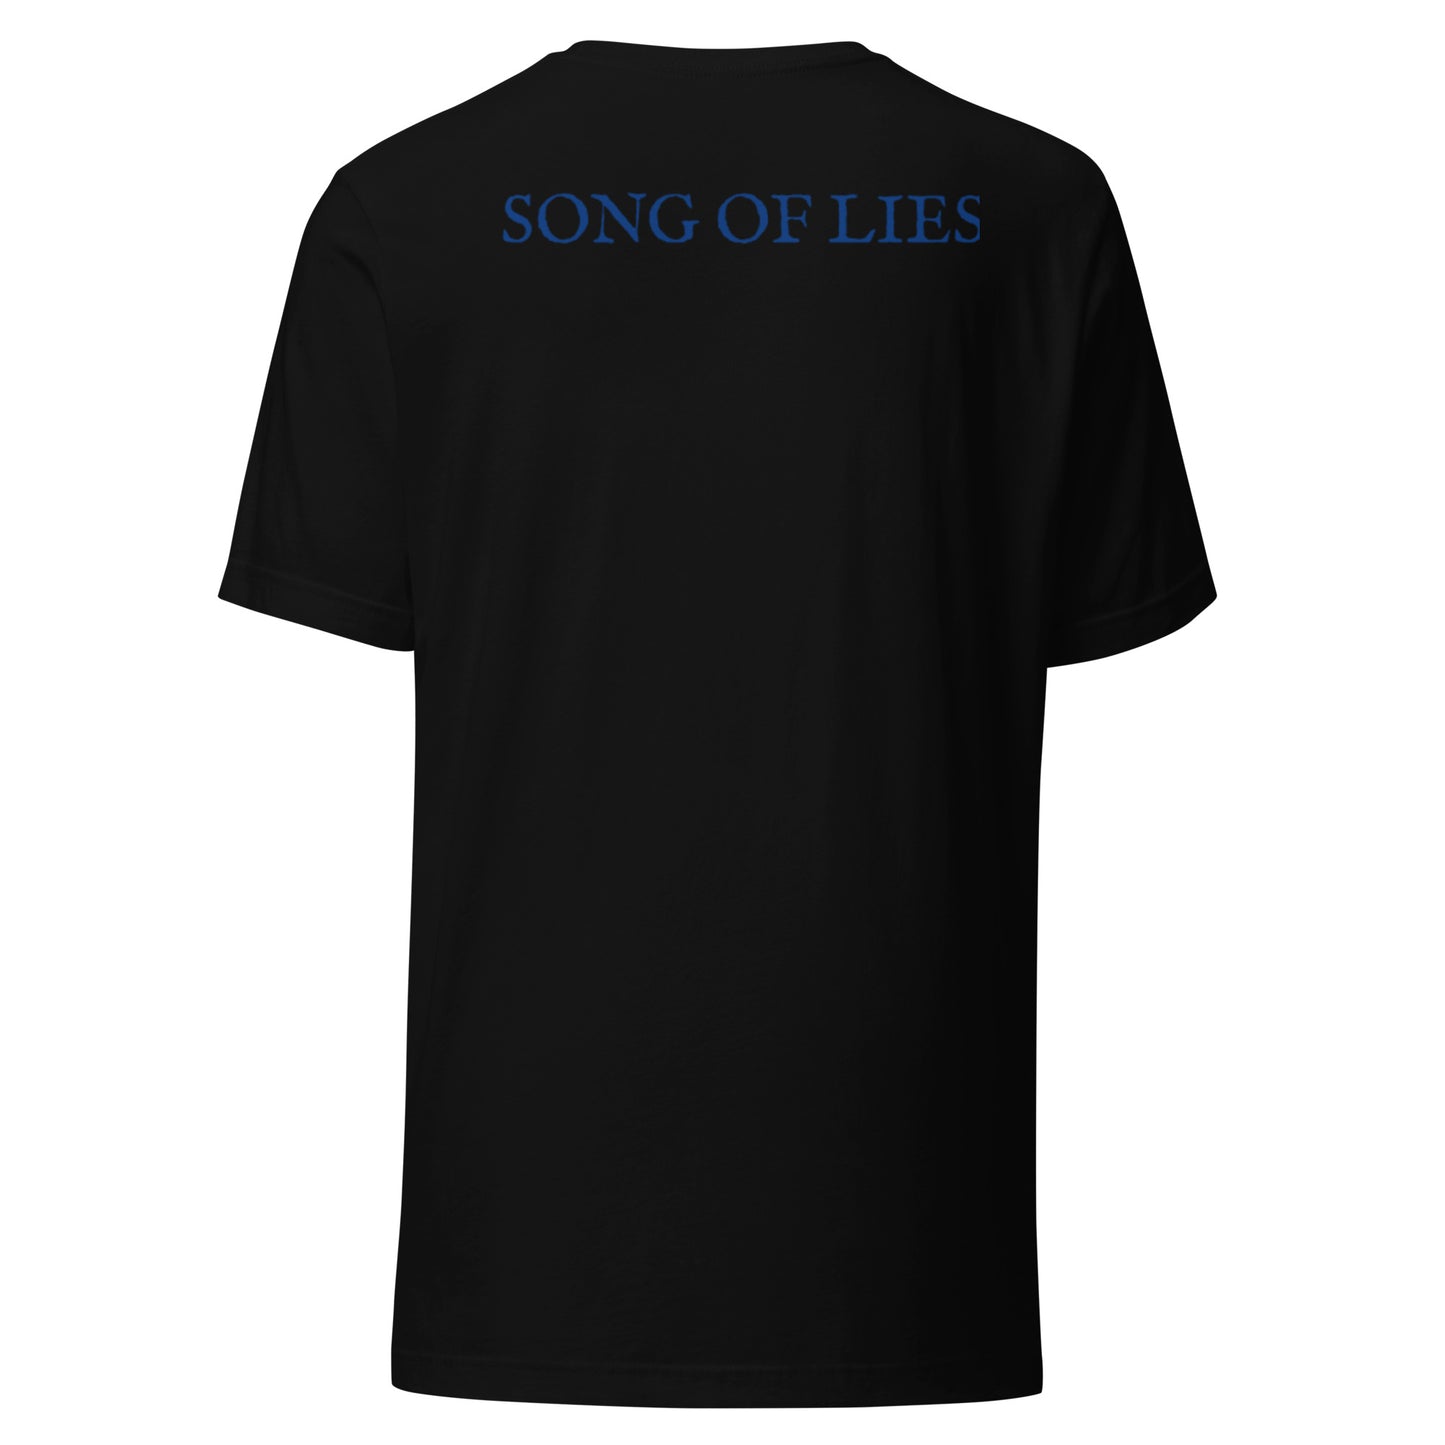 SONG OF LIES - Unisex t-shirt